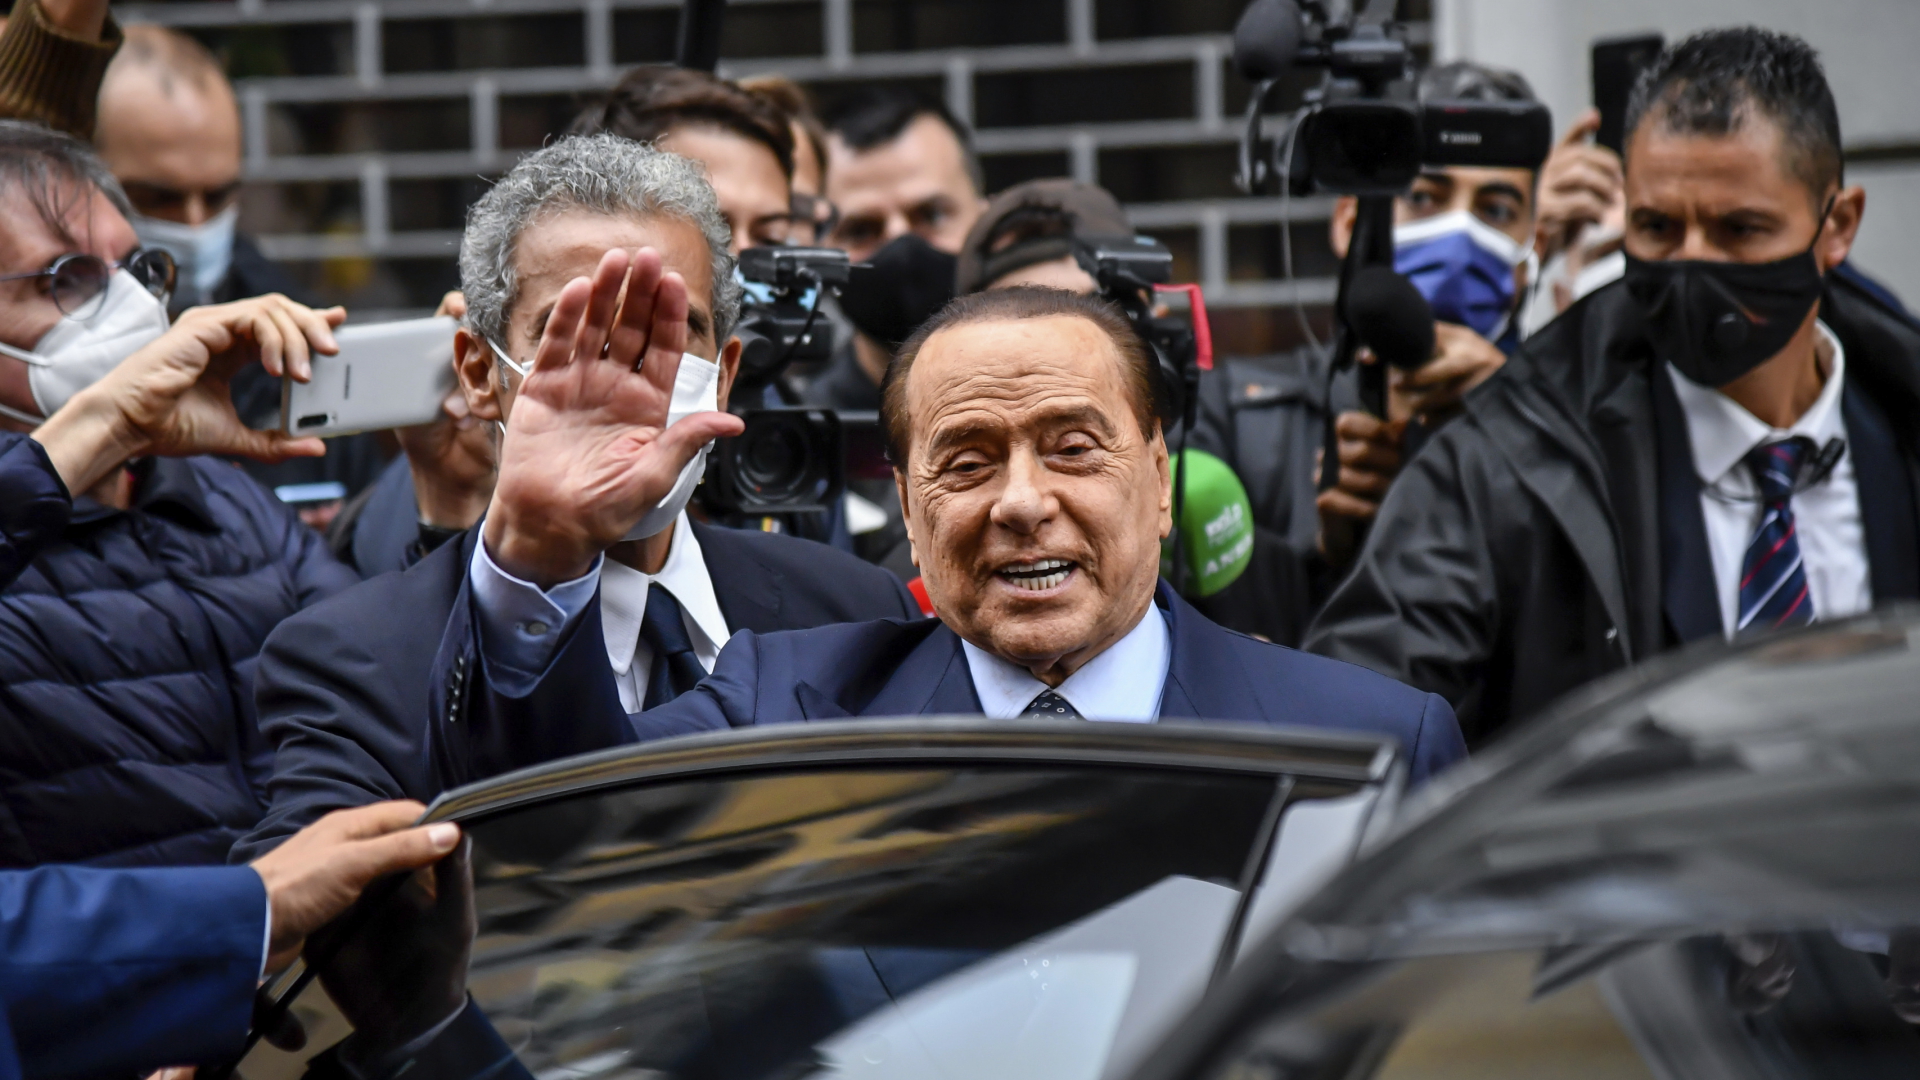 Silvio Berlusconi winkt, als er nach dem Verlassen eines Wahllokals in ein Auto steigt (Archiv). | dpa